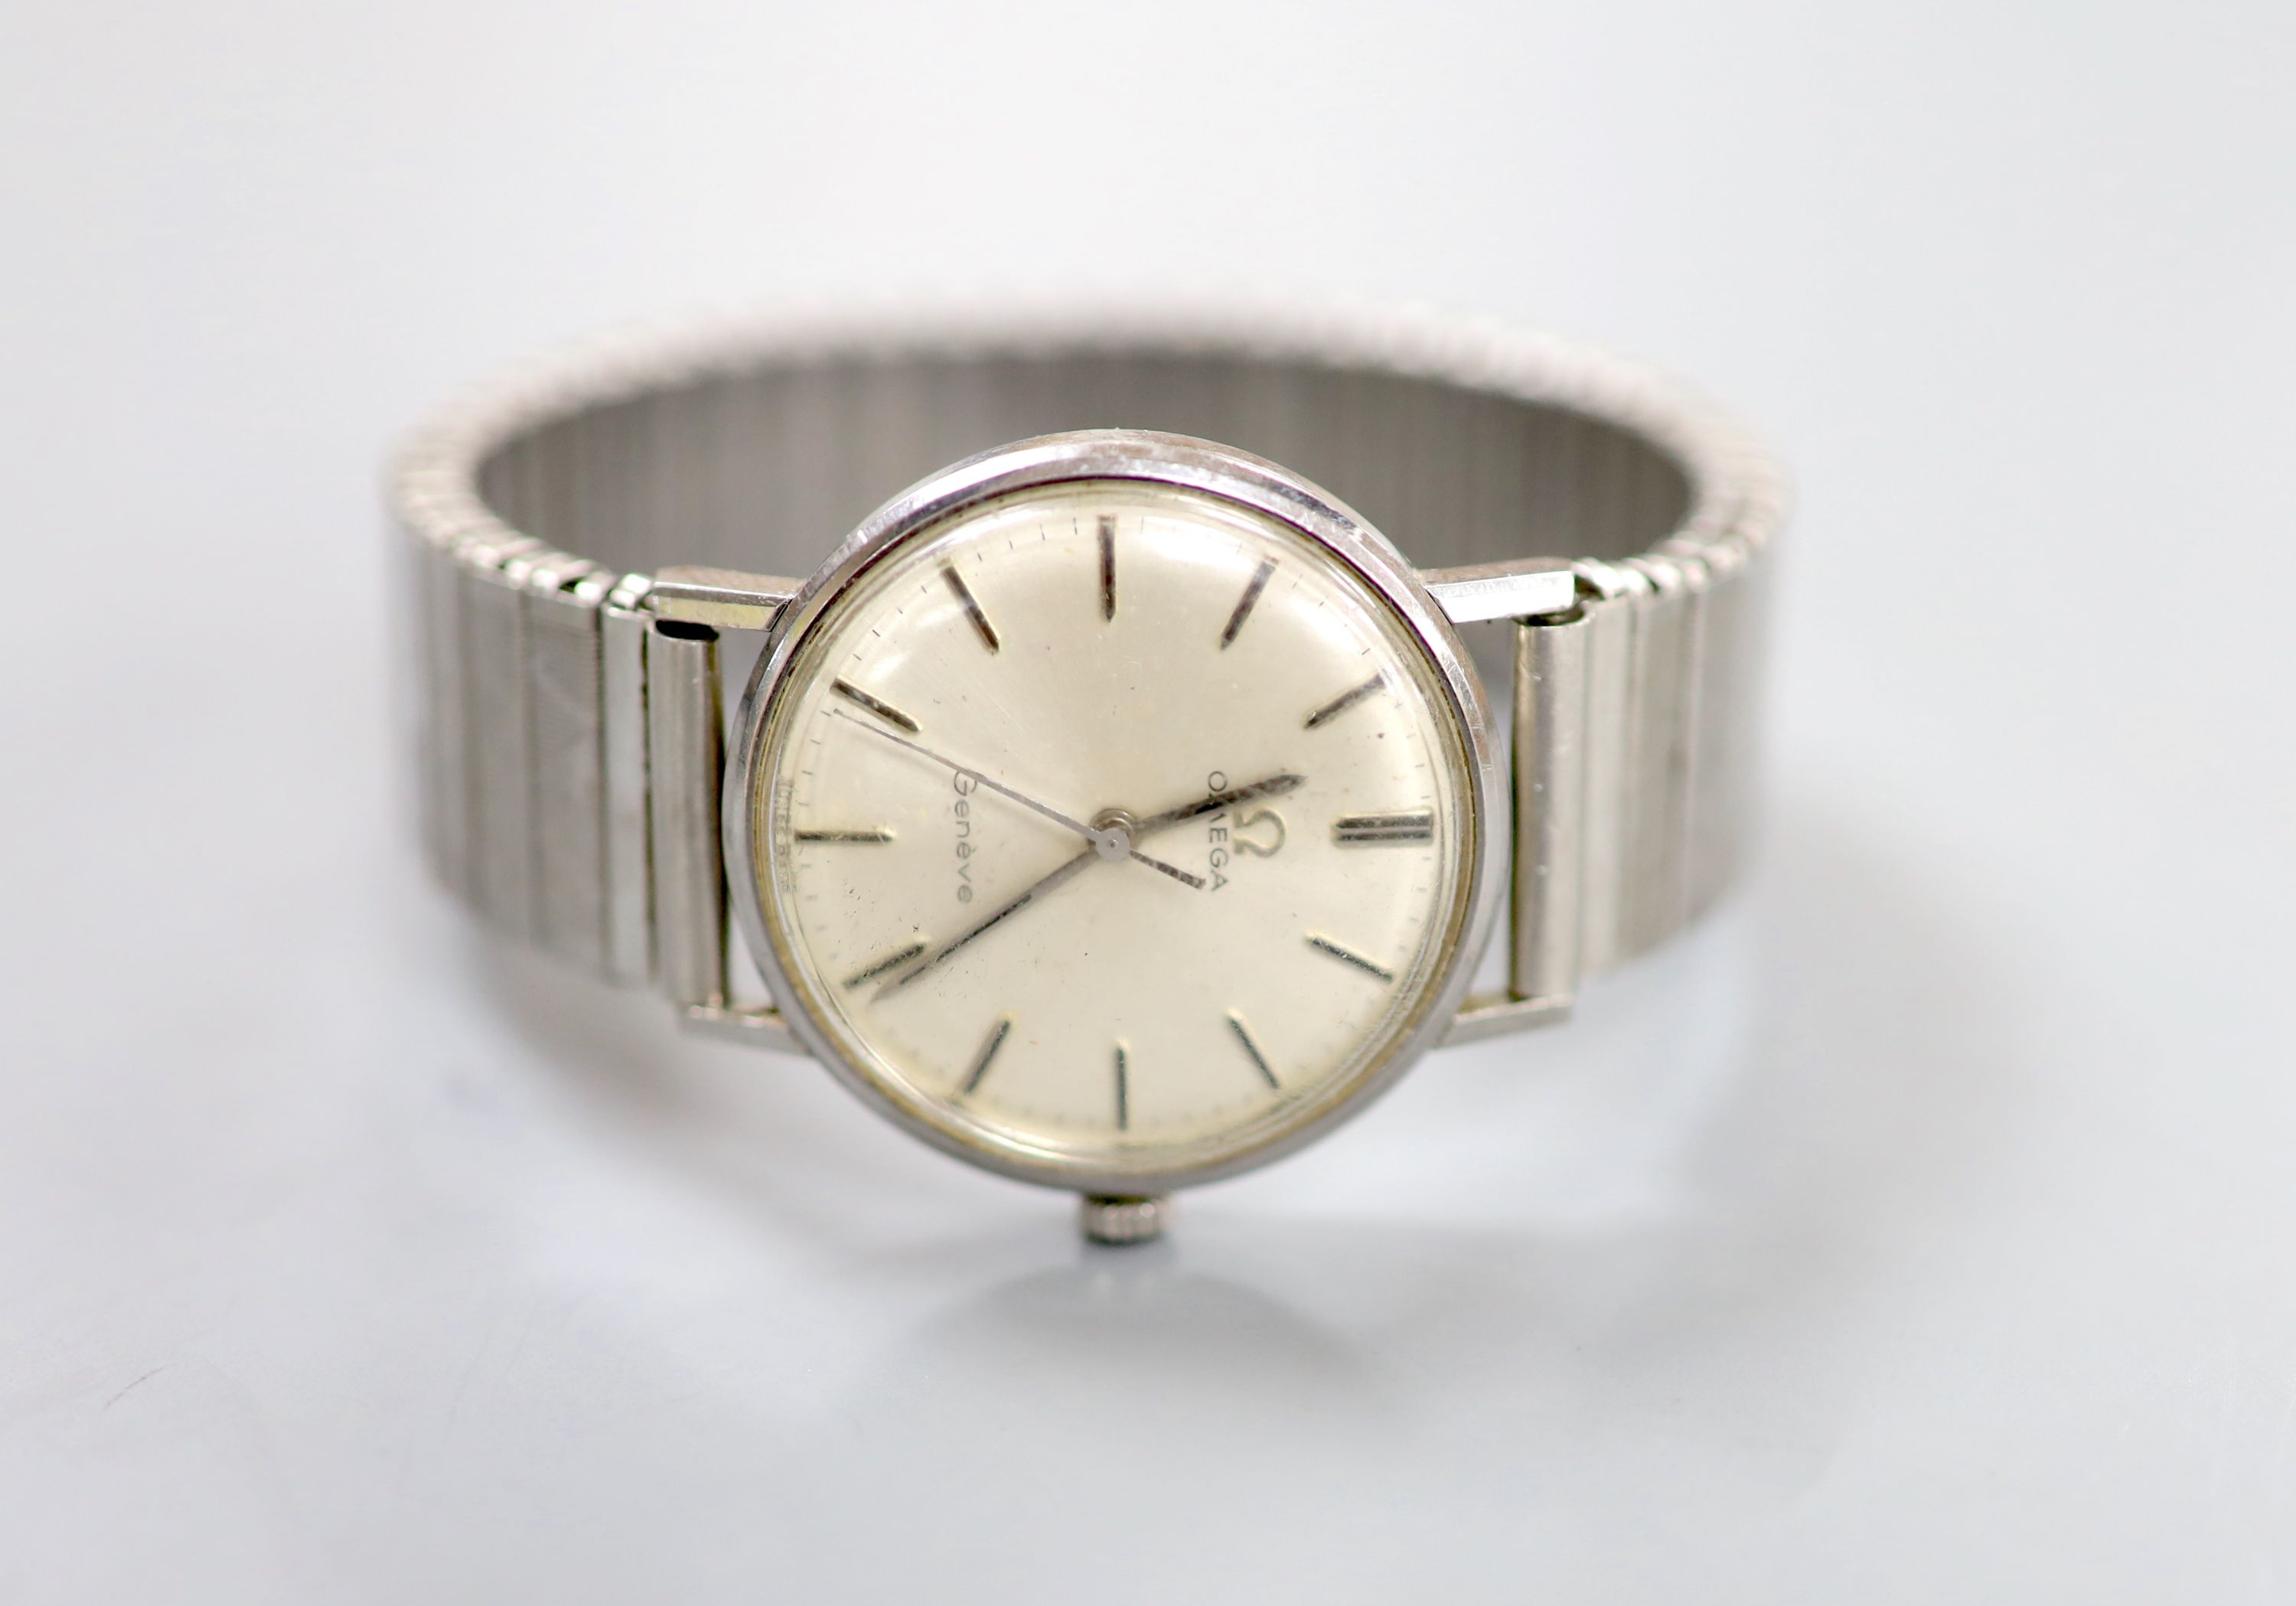 A gentleman's 1960's steel Omega manual wind wrist watch, on an associated flexible strap,case